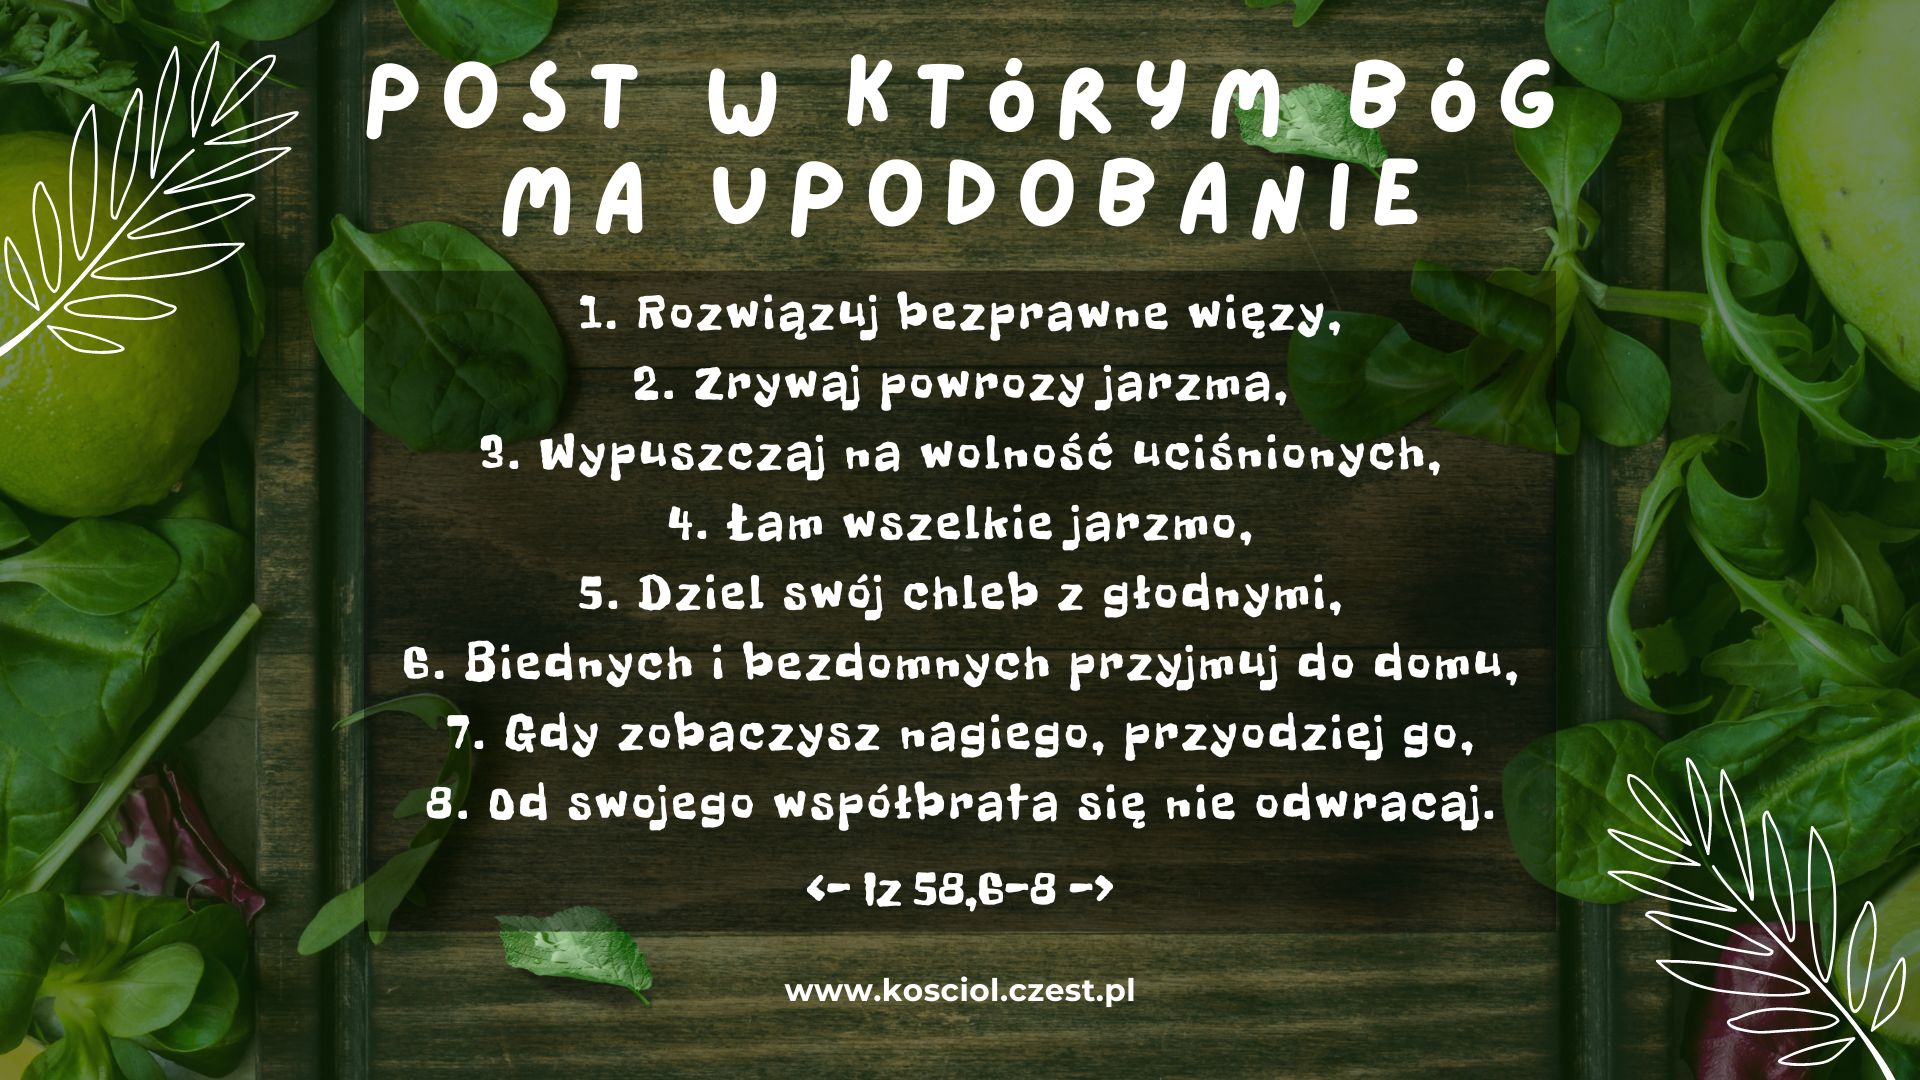 Post w którym Bóg ma upodobanie - kosciol.czest.pl